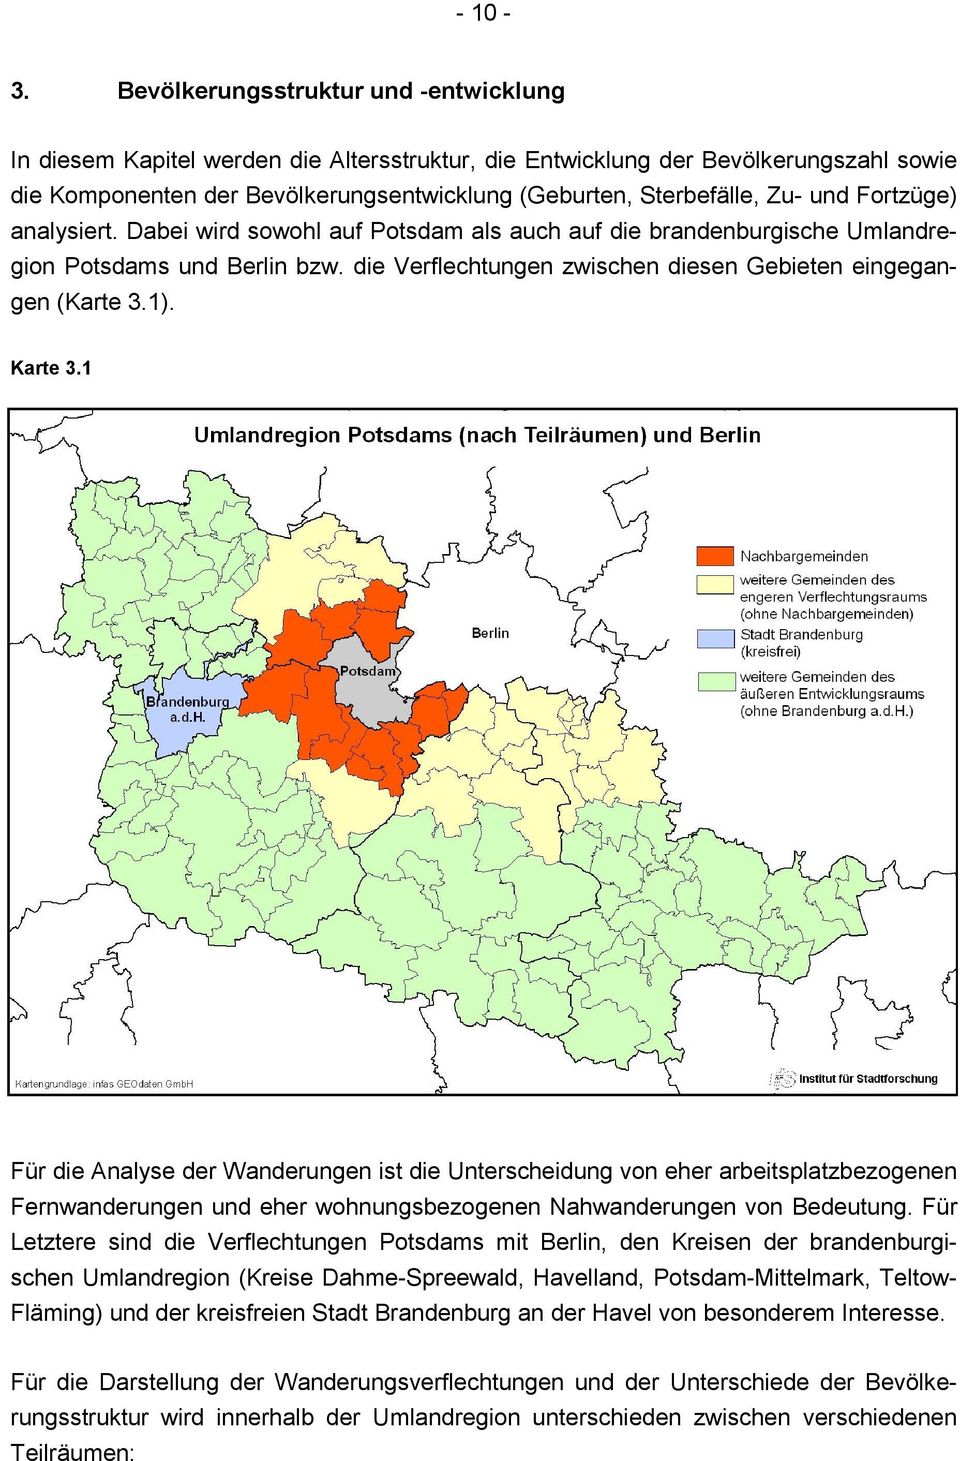 und Fortzüge) analysiert. Dabei wird sowohl auf Potsdam als auch auf die brandenburgische Umlandregion Potsdams und Berlin bzw. die Verflechtungen zwischen diesen Gebieten eingegangen (Karte 3.1).